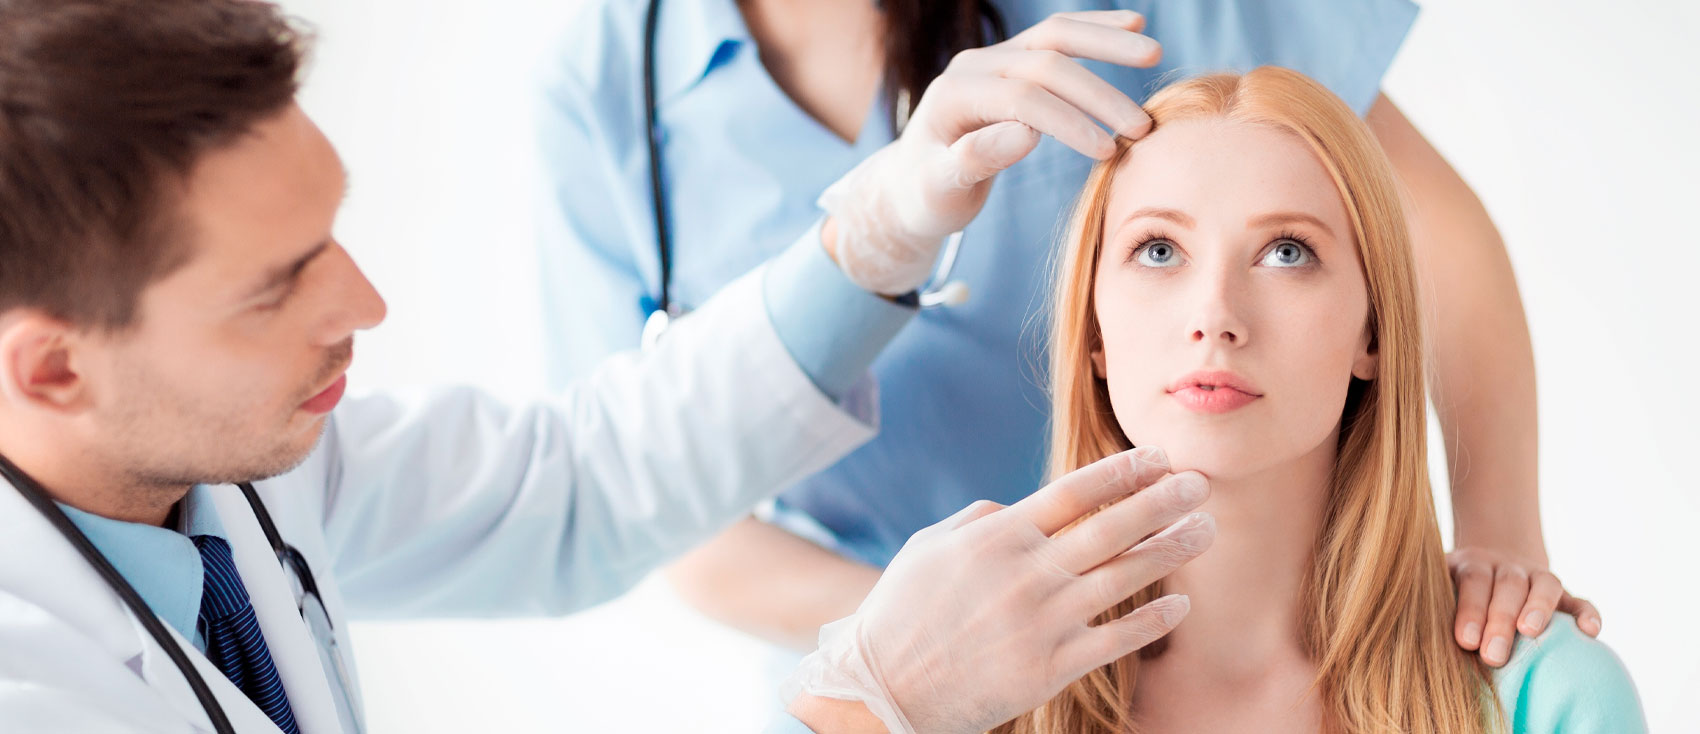 Botox en clínicas de medicina estética para aplicaciones innovadoras